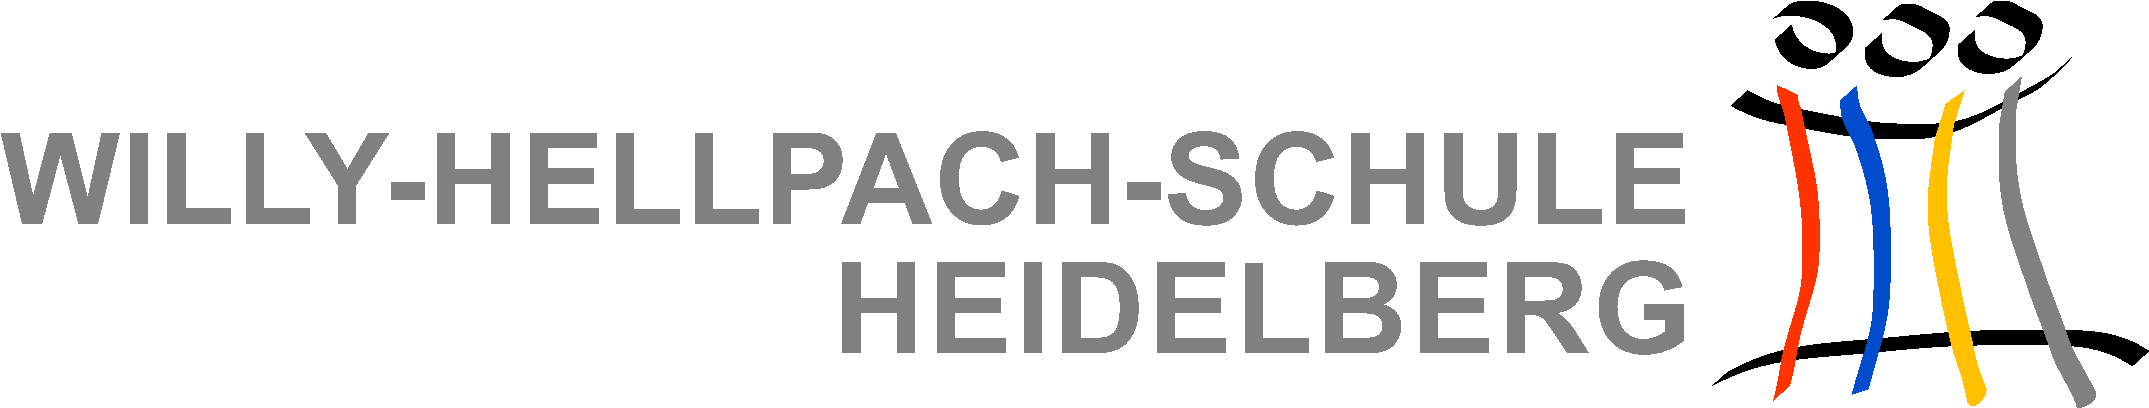 Logo Willy-Hellpach-Schule Heidelberg